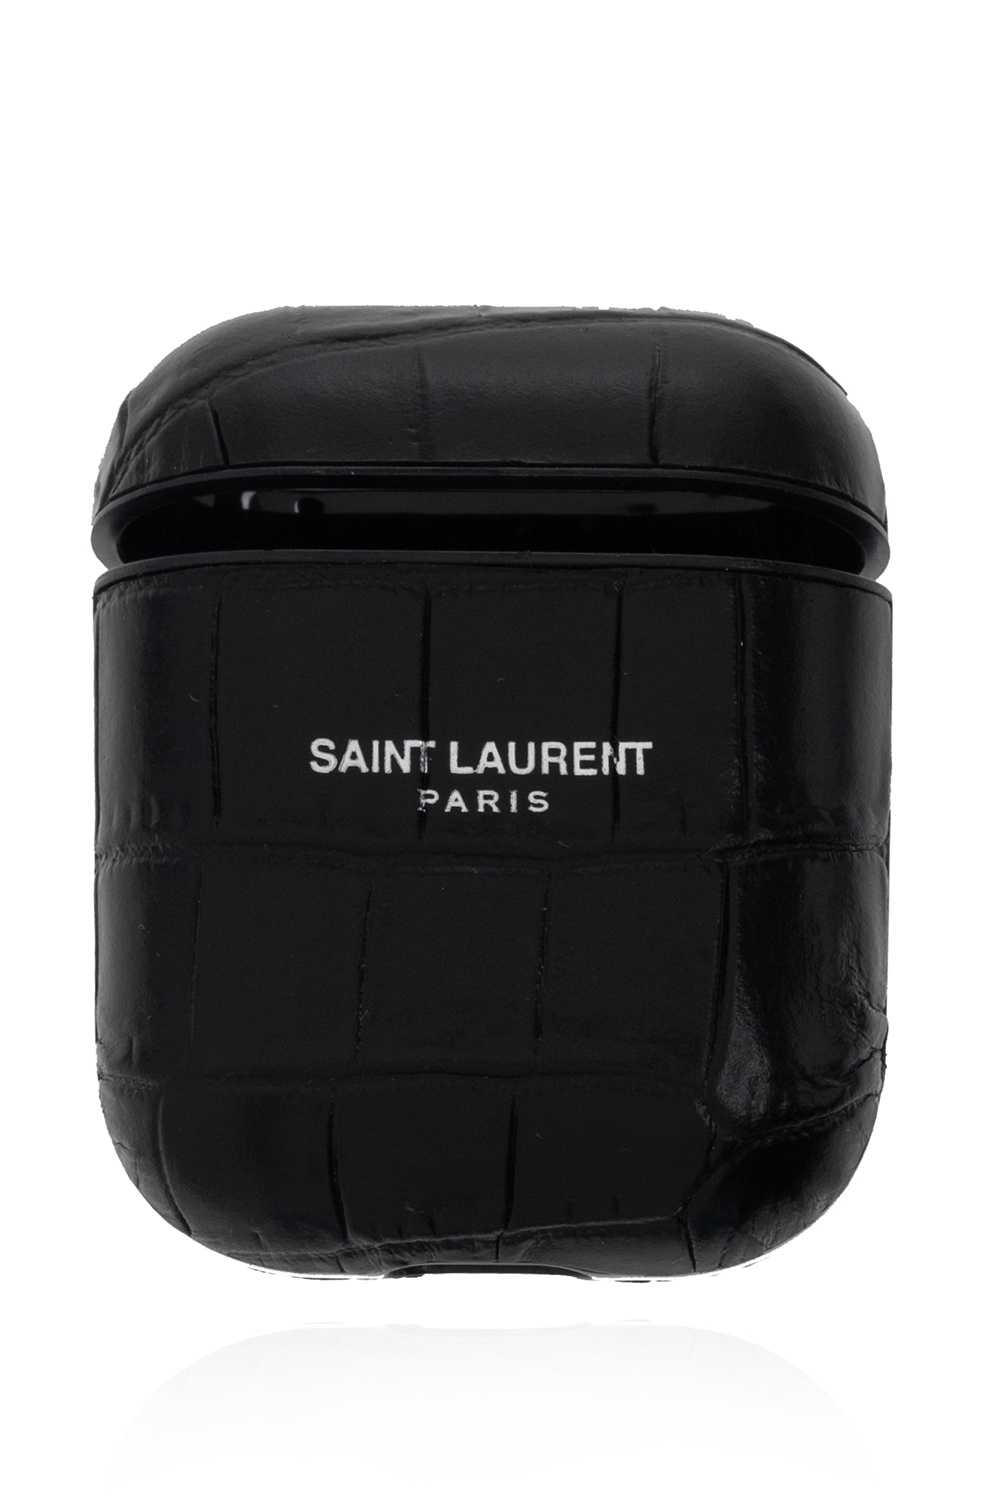 Saint Laurent saint laurent uptown leather card case